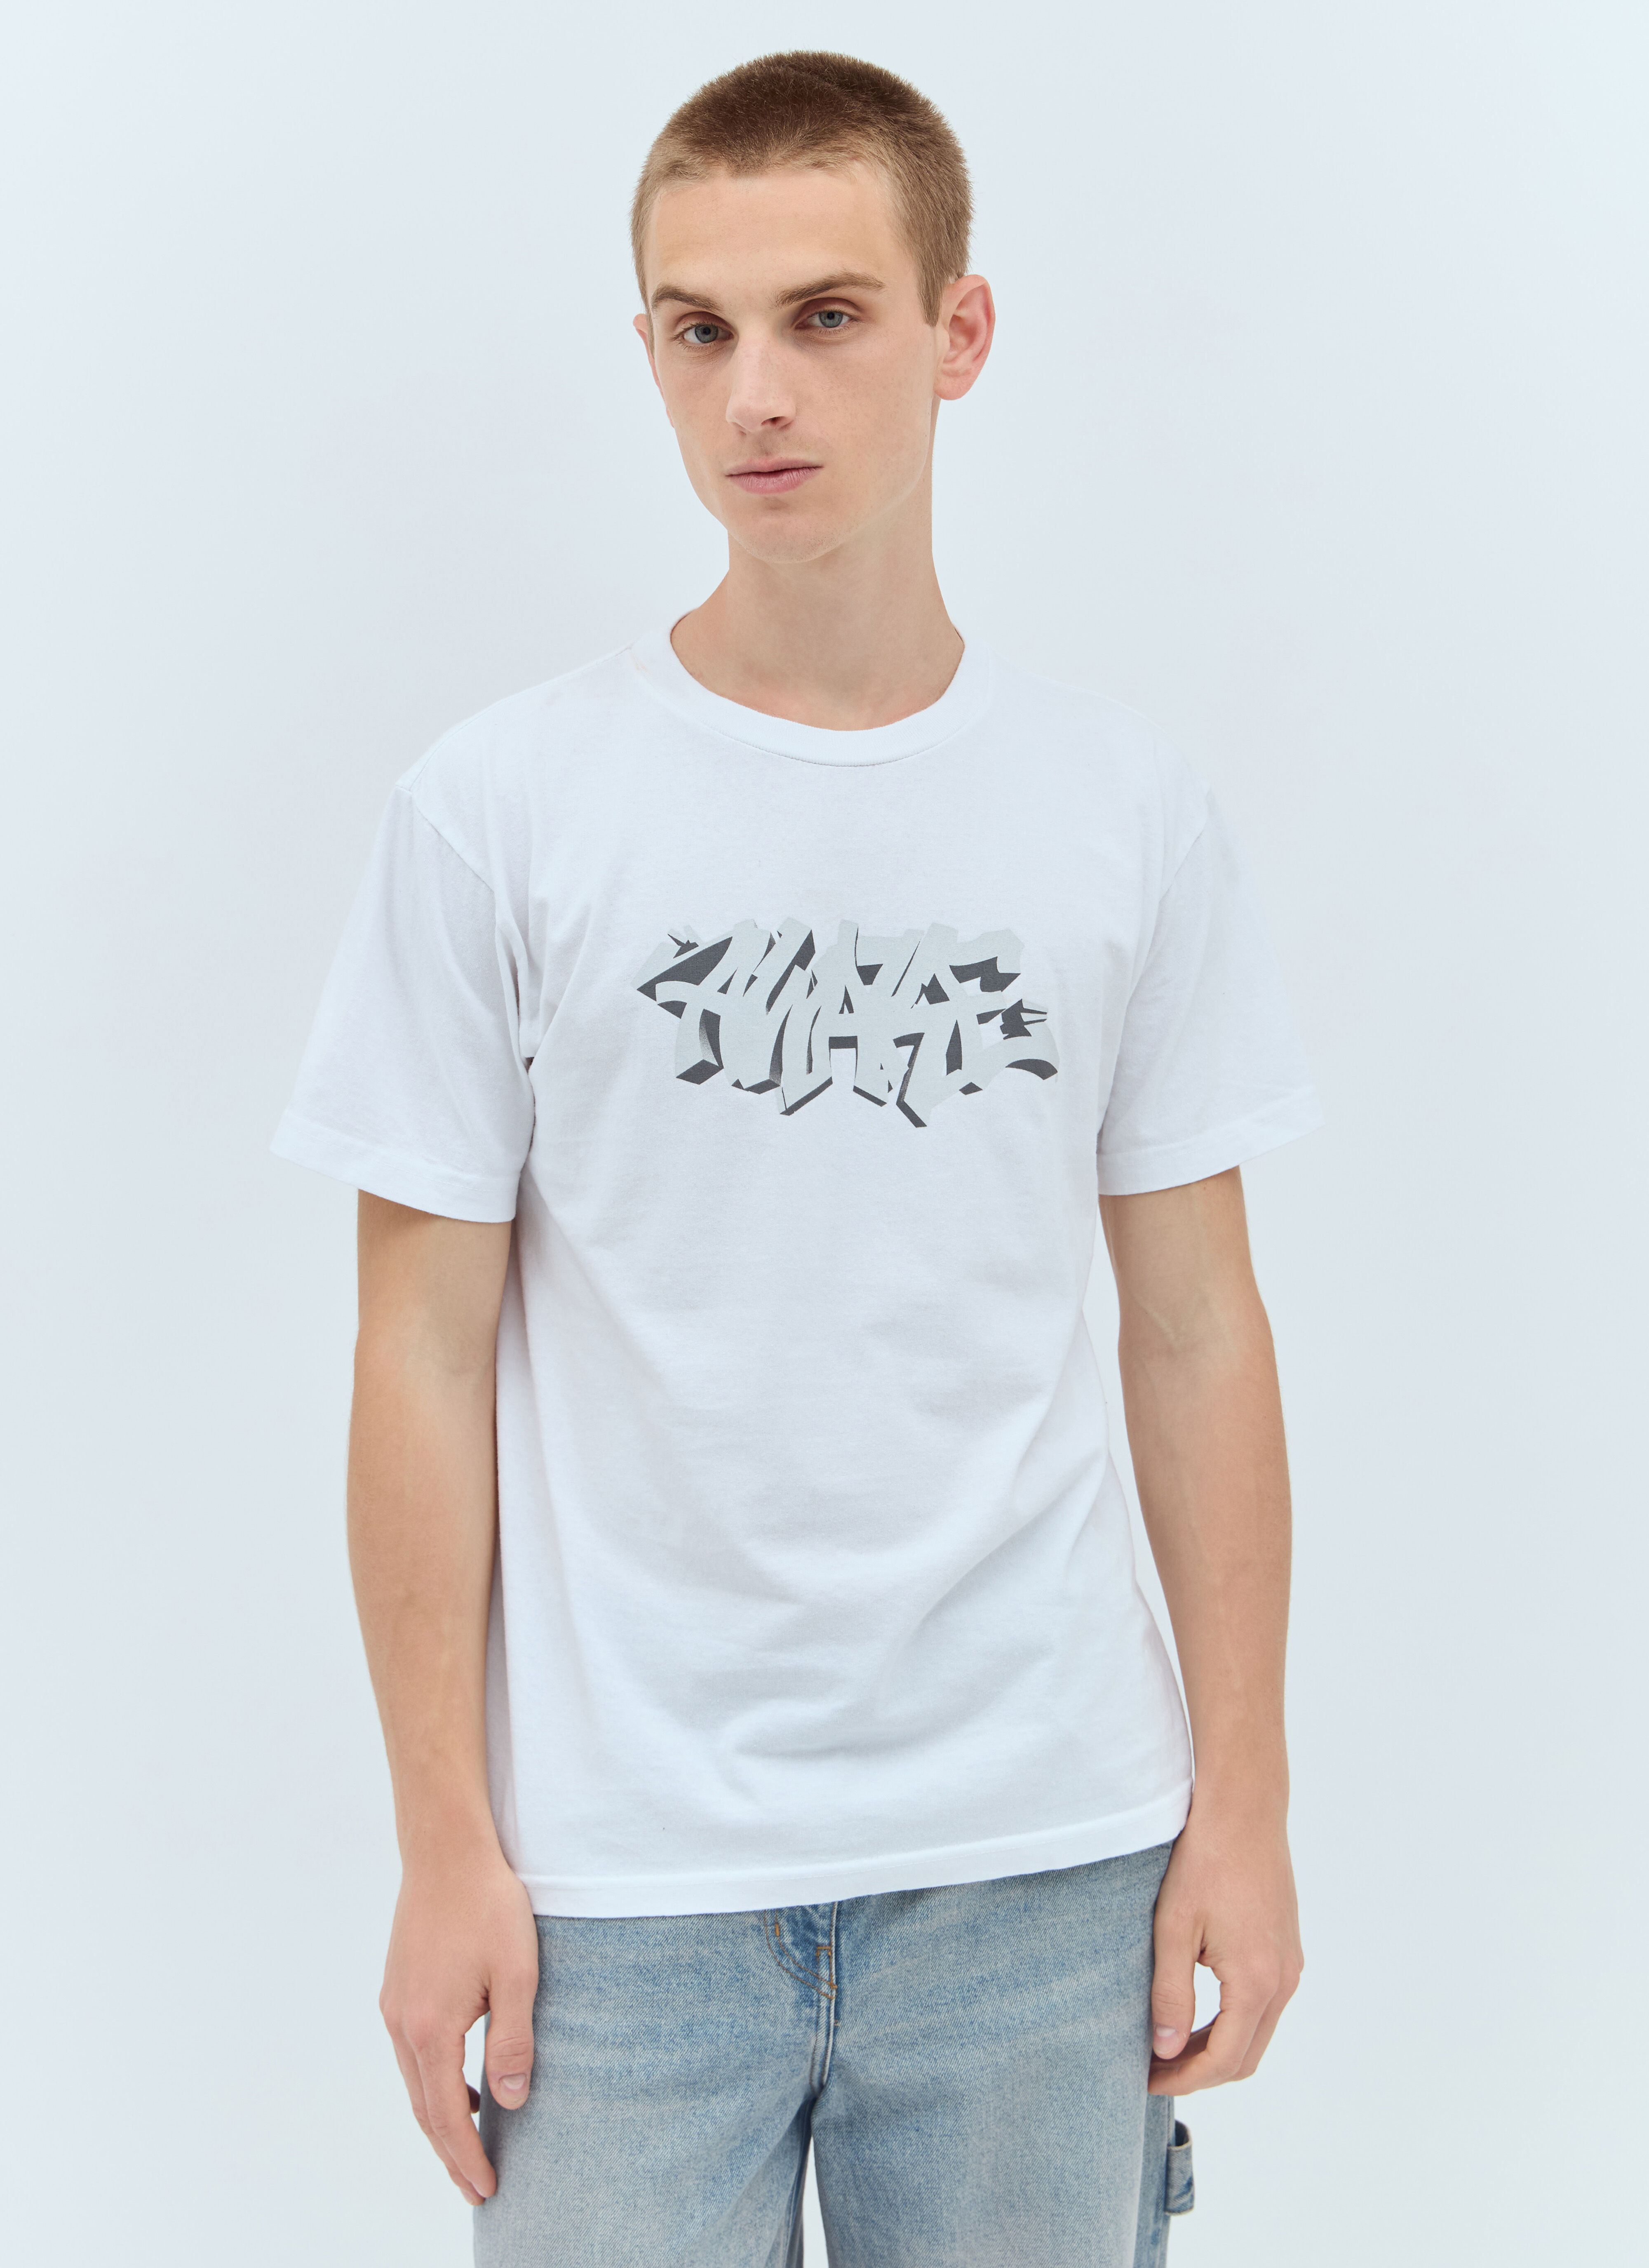 Vivienne Westwood Graffiti T-Shirt Multicolour vvw0157003